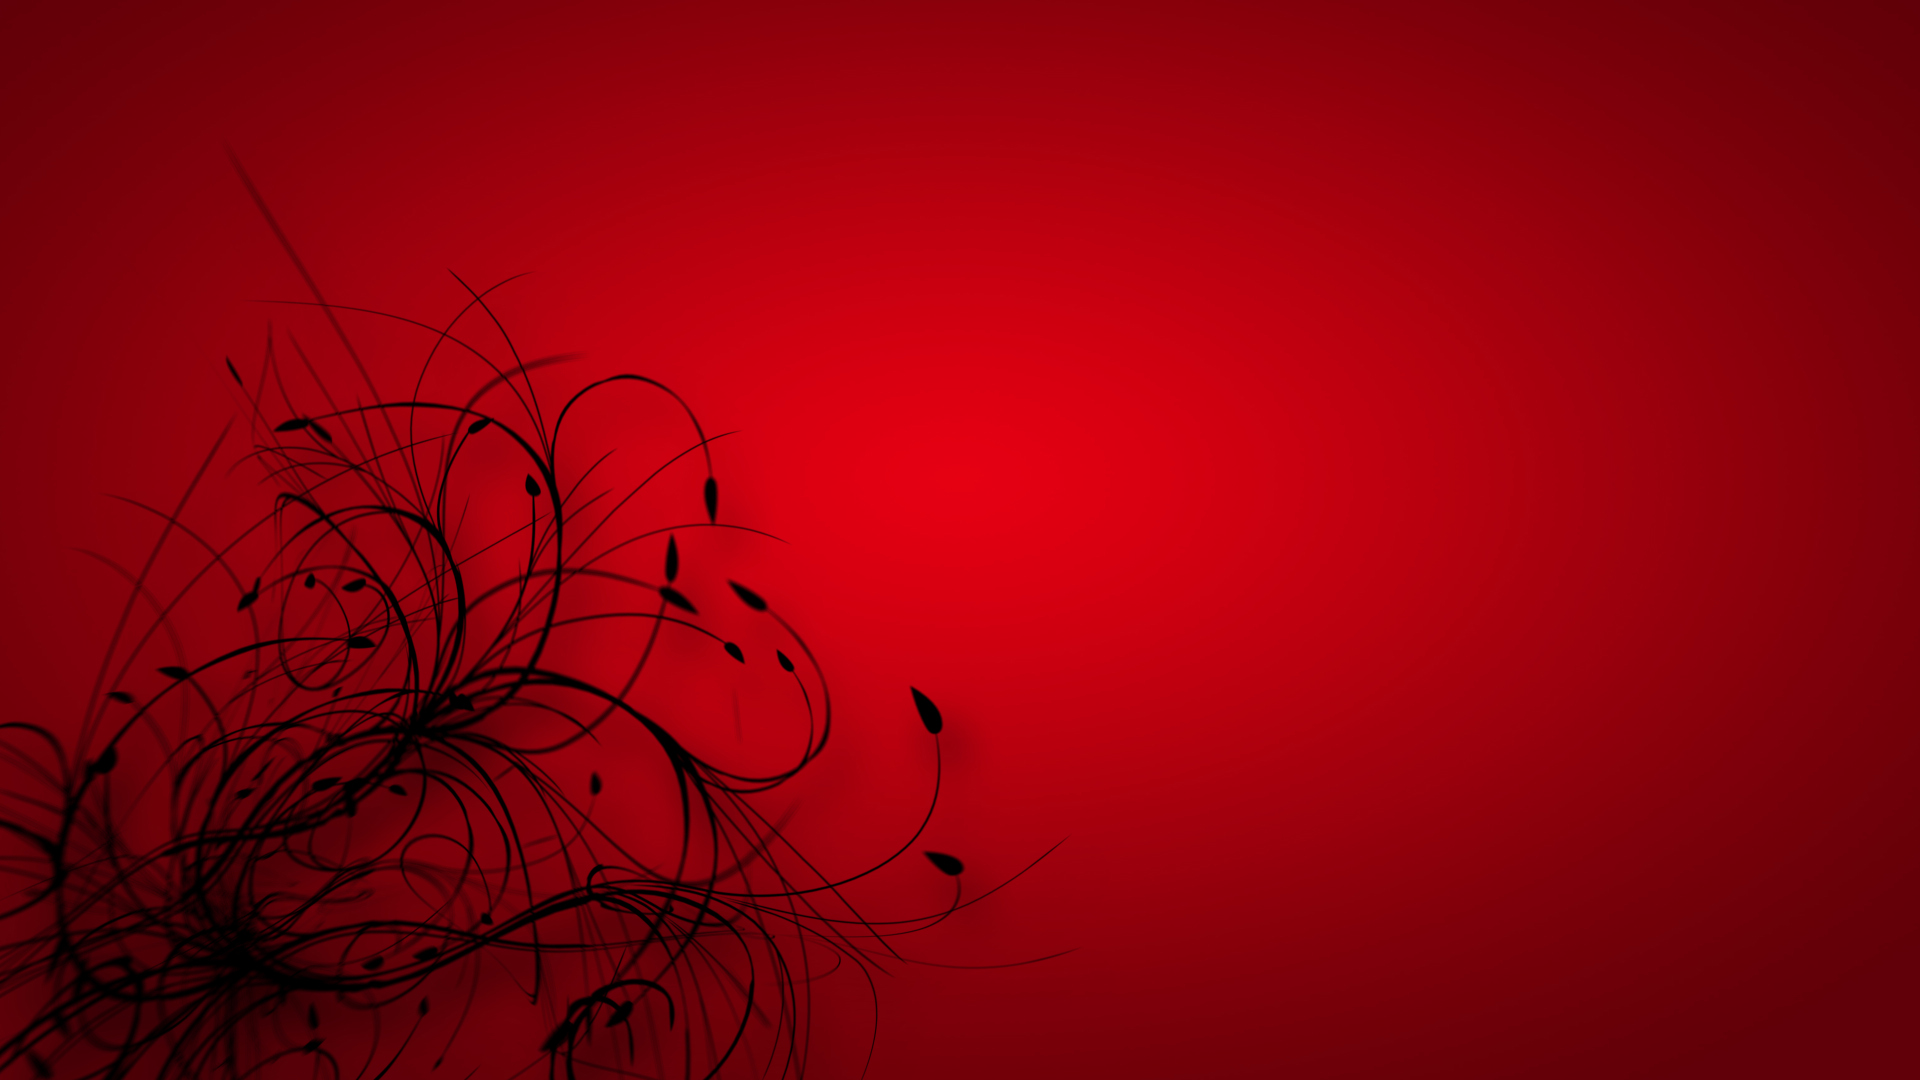 47+] Red HD Wallpapers 1080p - WallpaperSafari